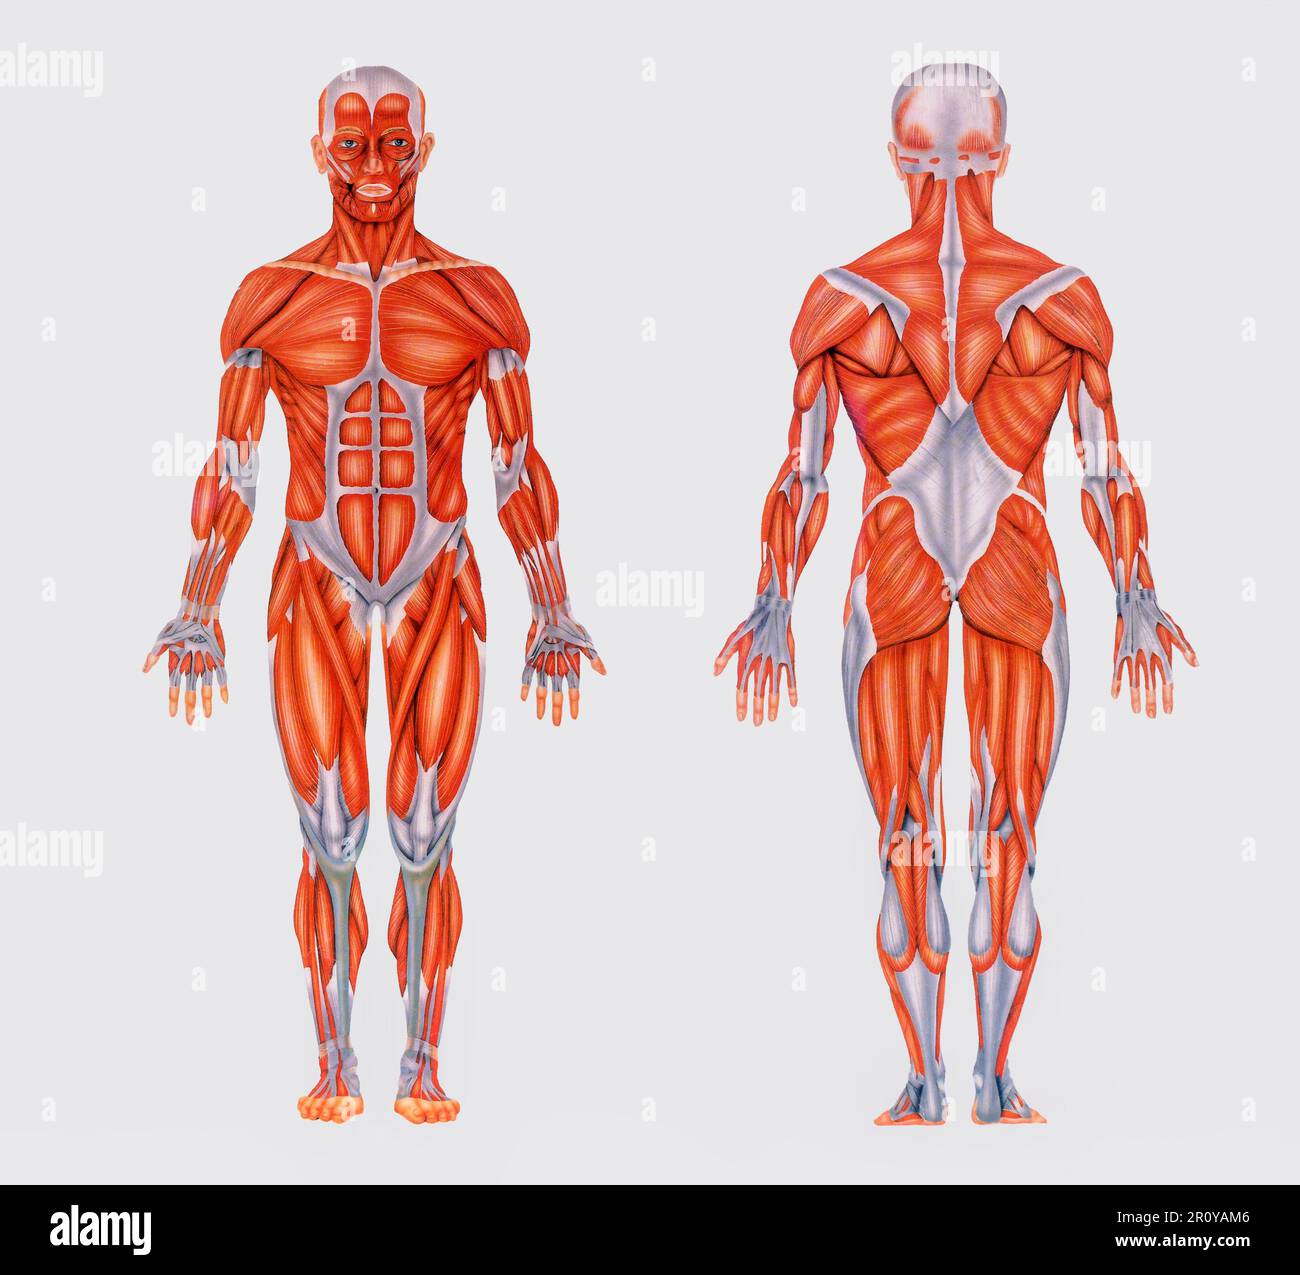 Graphique vintage simple avec image de l'anatomie complète montrant les muscles du corps humain Banque D'Images